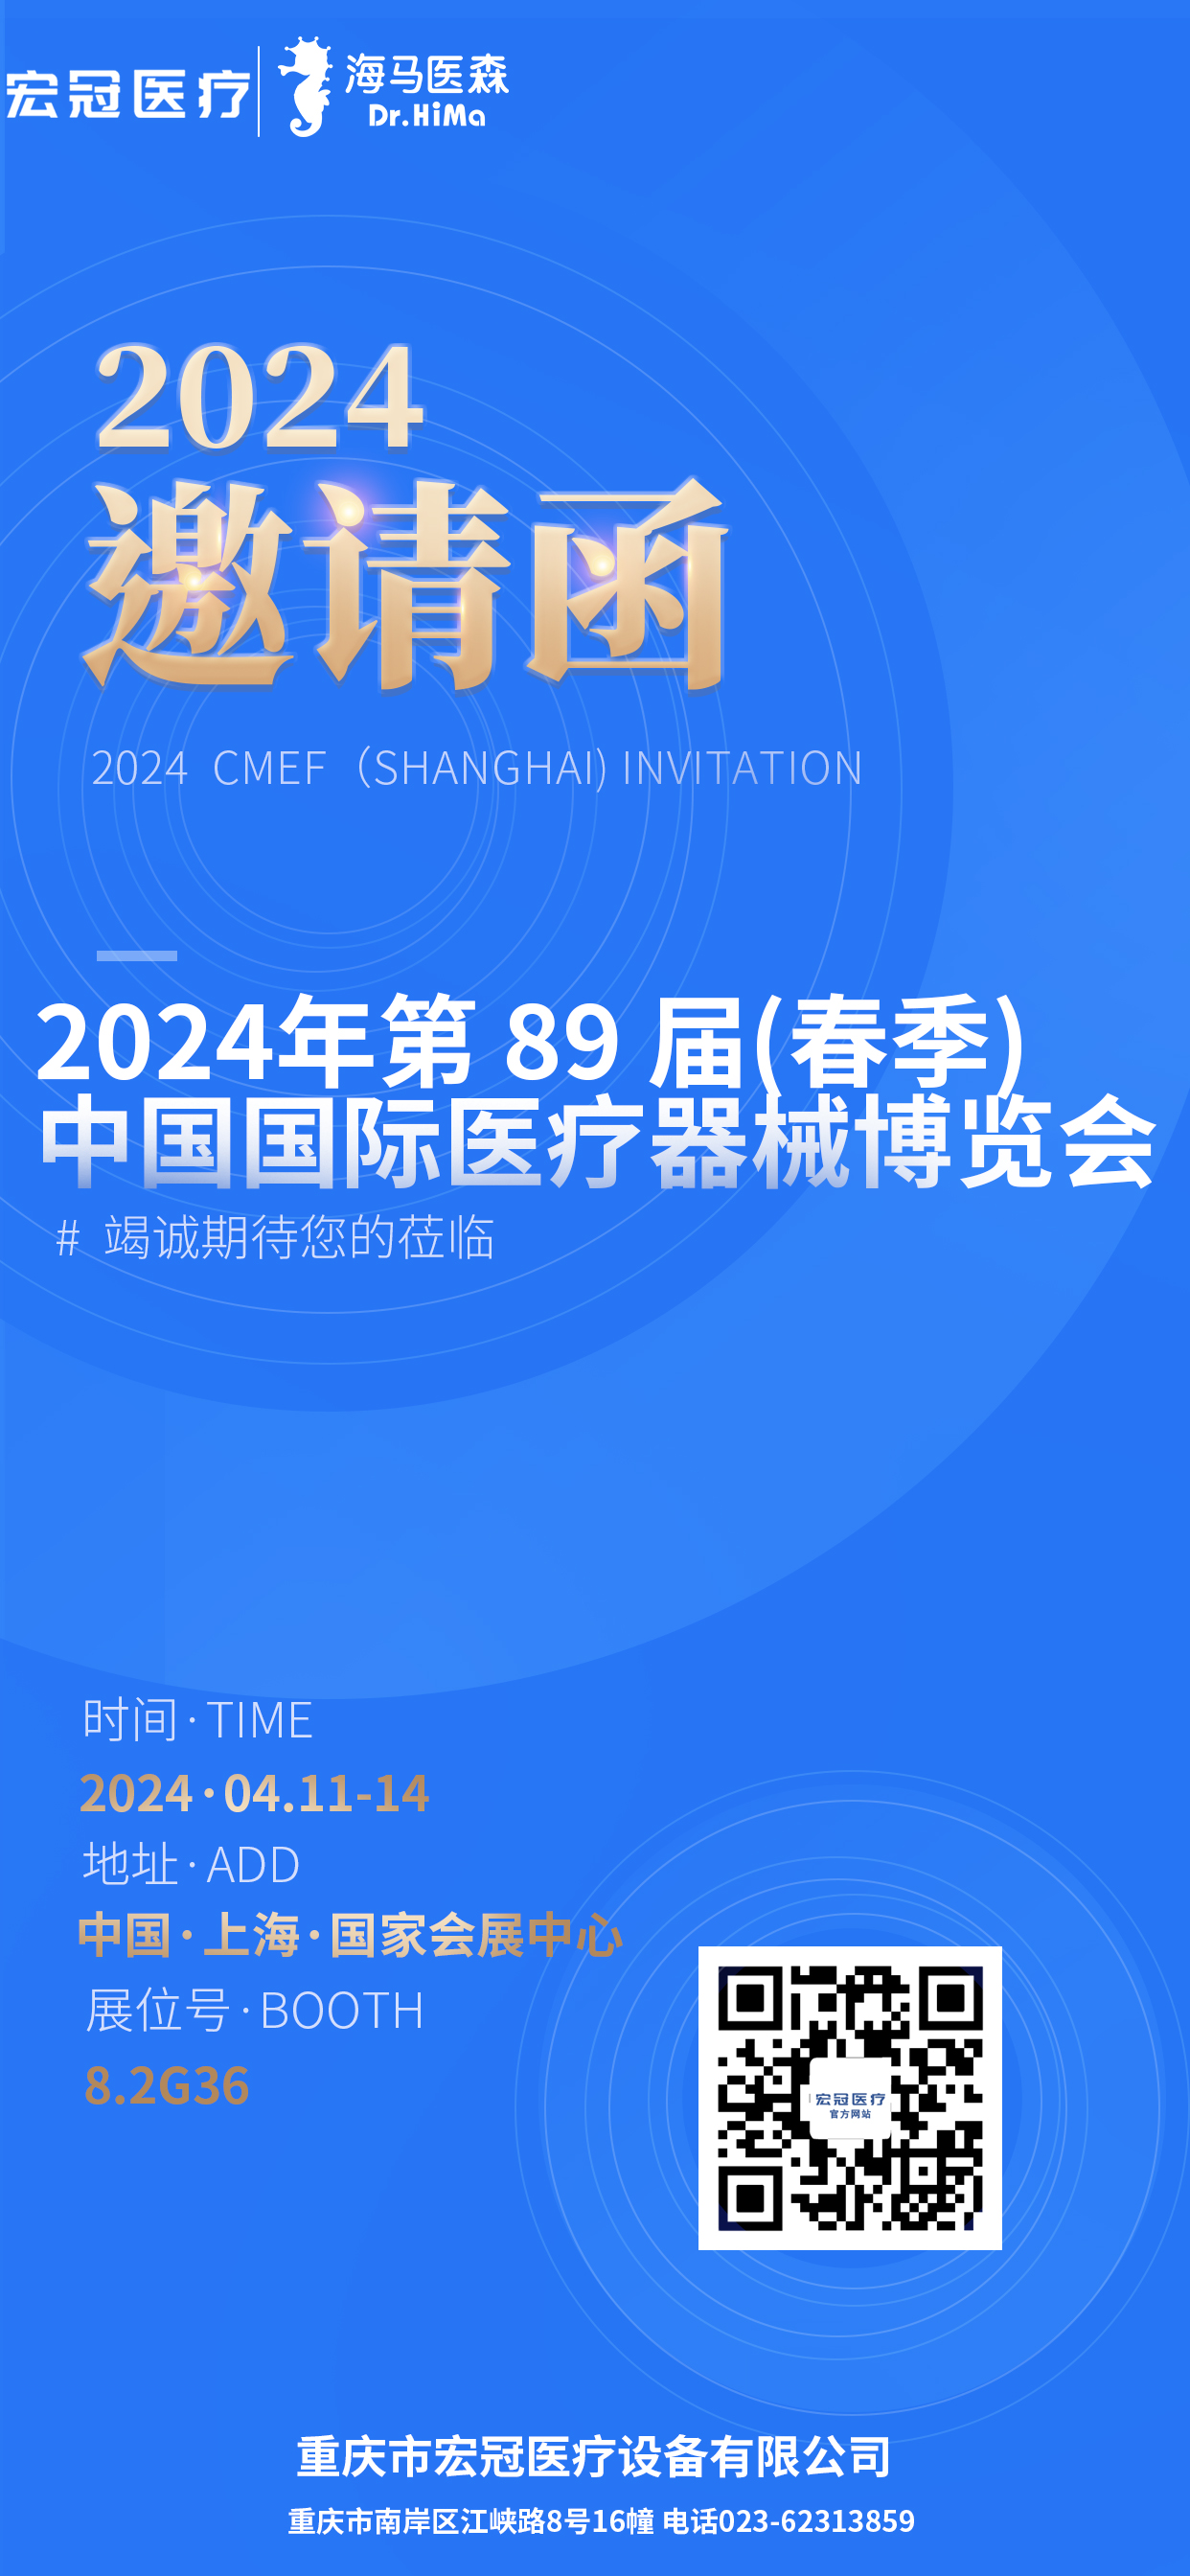 Fanasana ho an'ny 2024 CMEF(Shanghai)